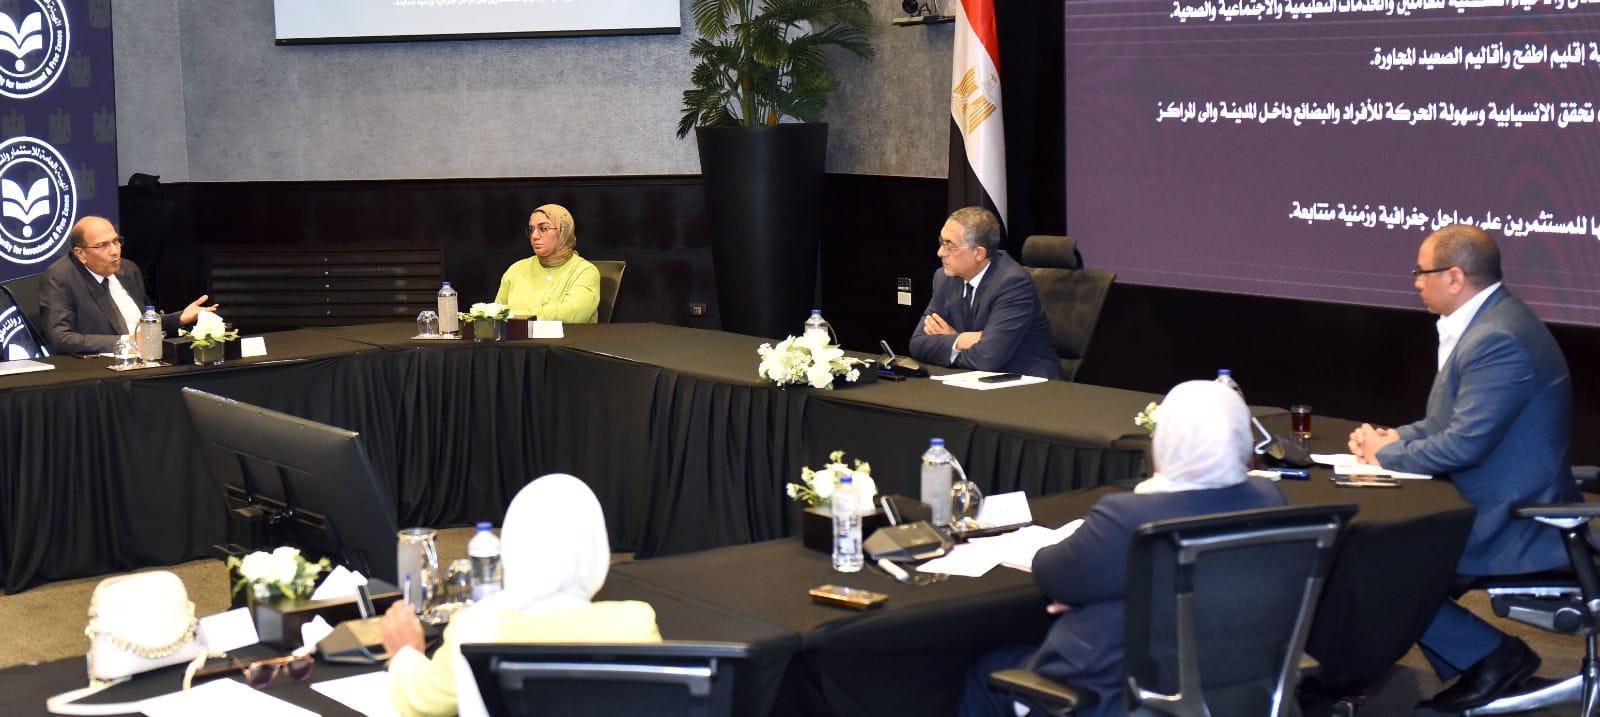 اجتماع الهيئة العامة للاستثمار برئاسة حسام هيبة